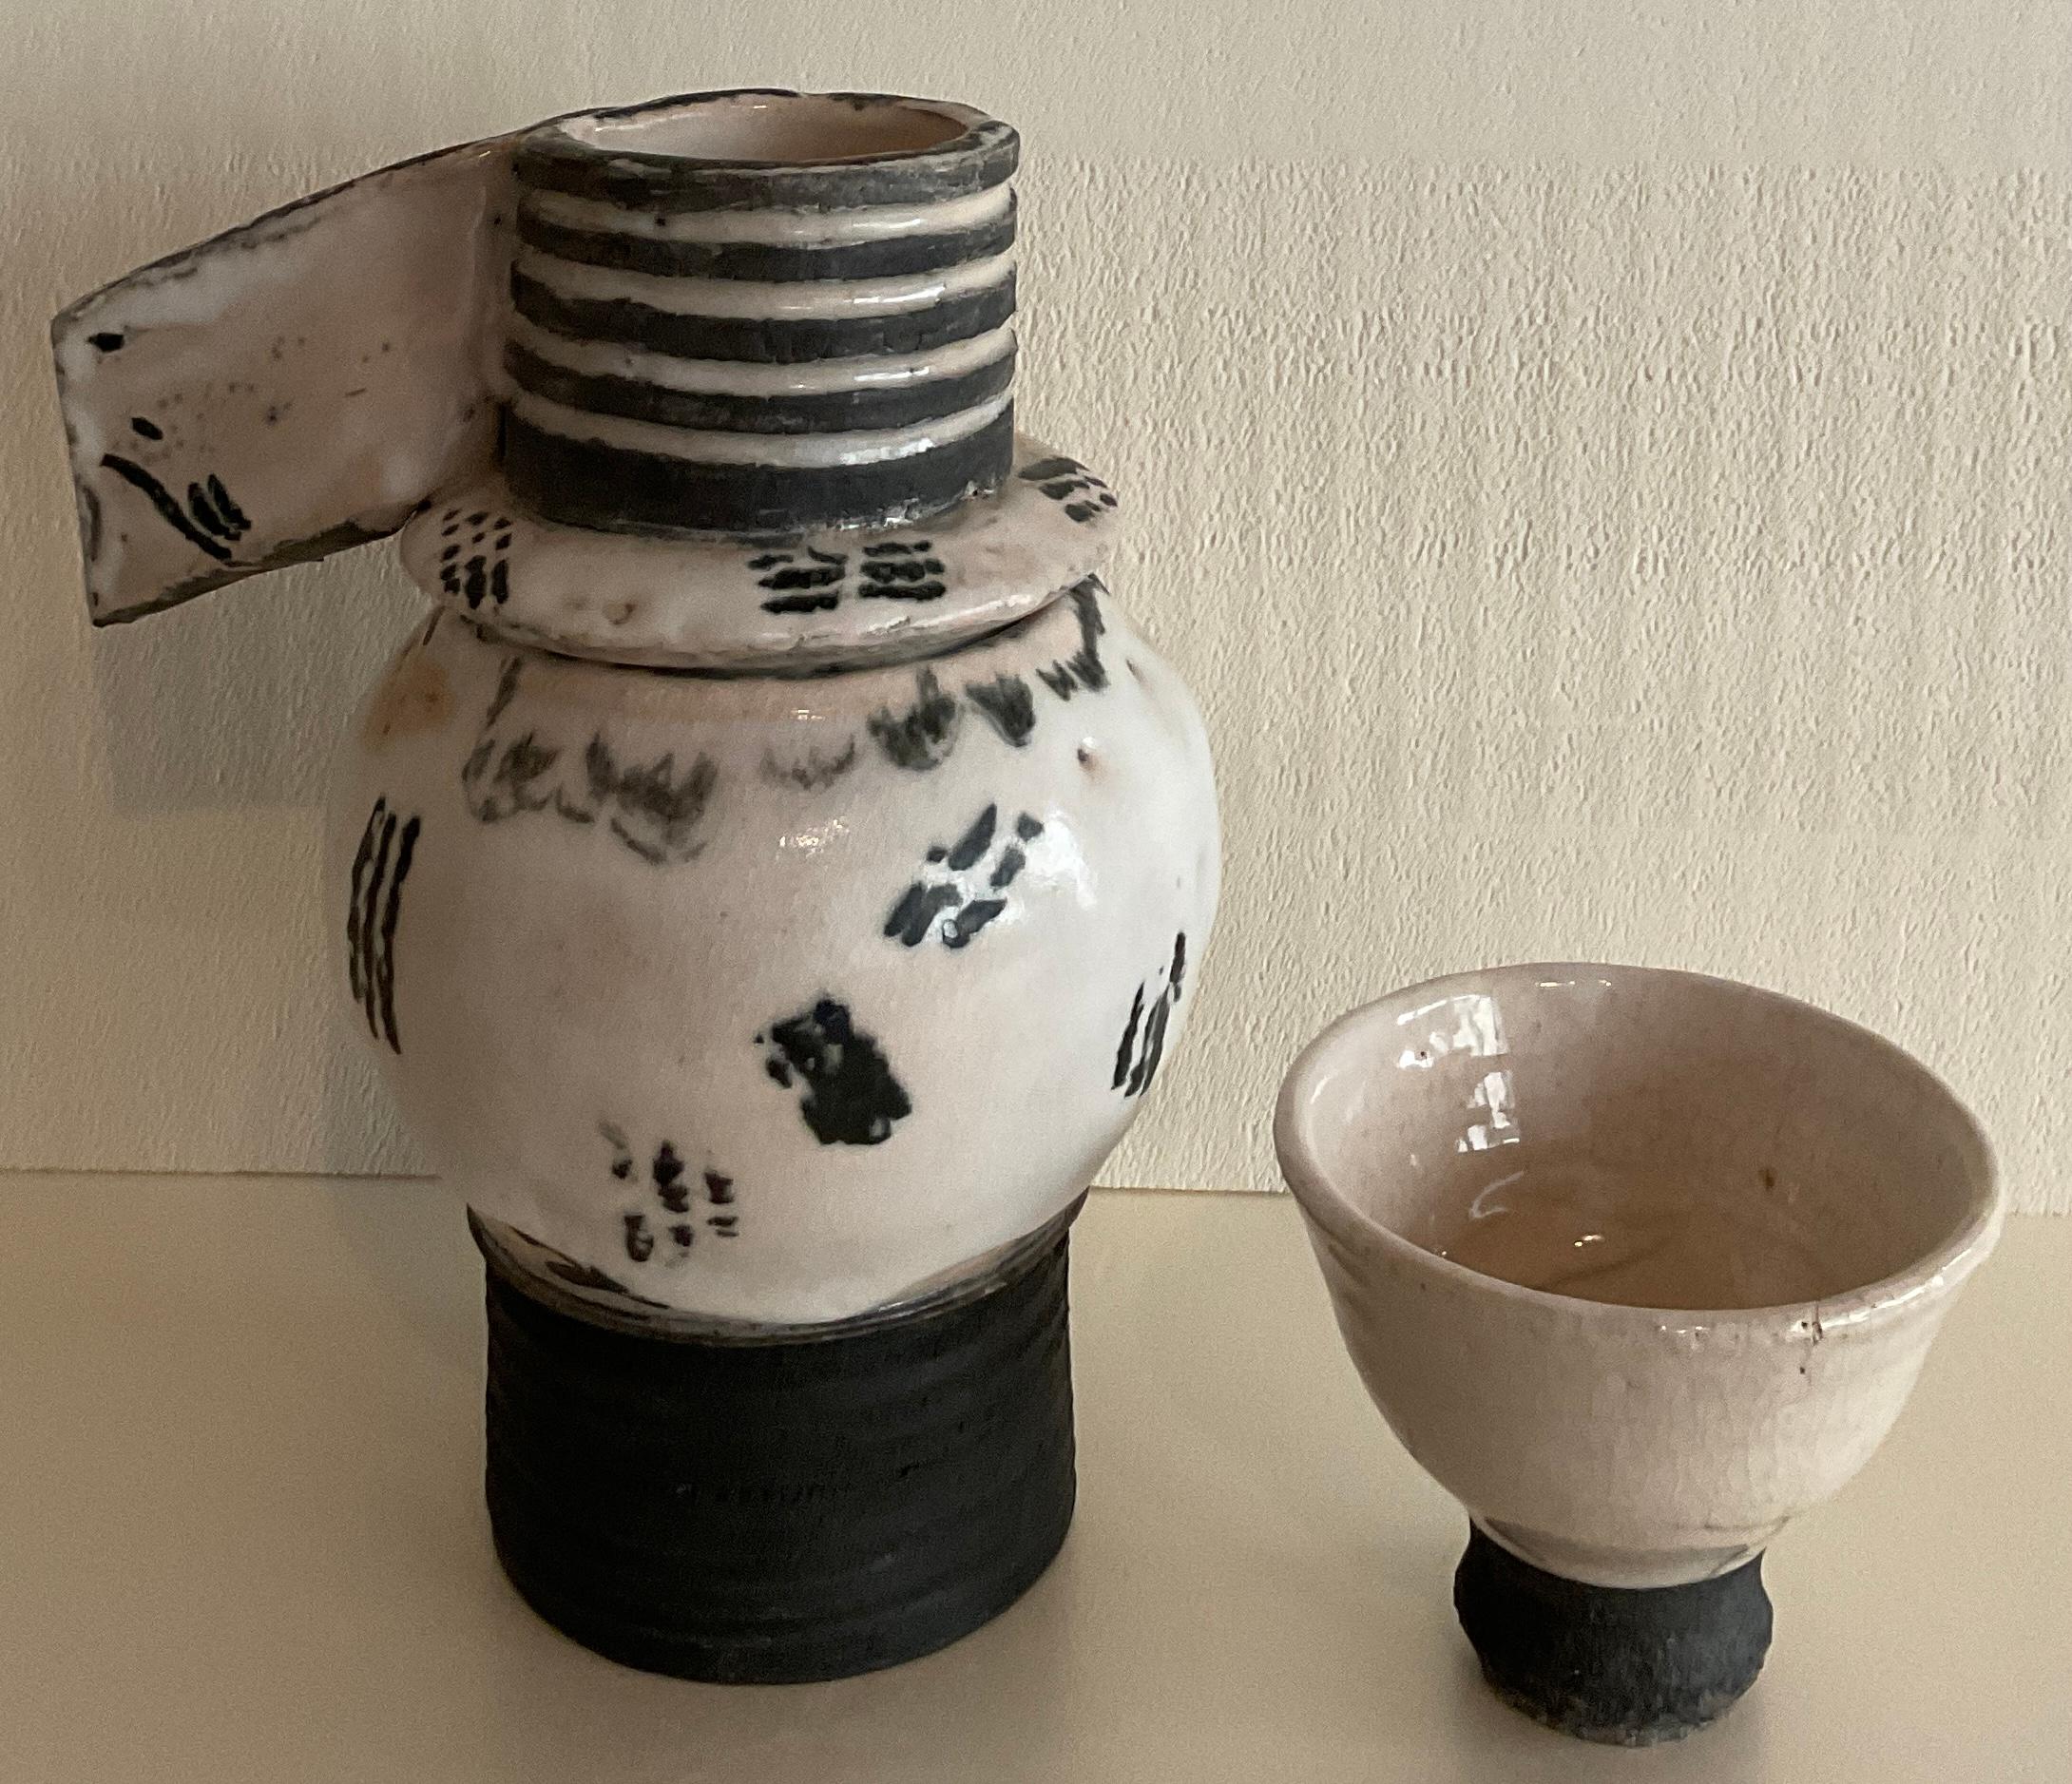 Une très belle théière et une tasse à thé en céramique de style japonais contemporain. 

Cette théière zen comporte trois parties qui permettent une infusion parfaite du thé. 
Vitré. 
Artiste céramiste, inconnu. 

Mesures : 7